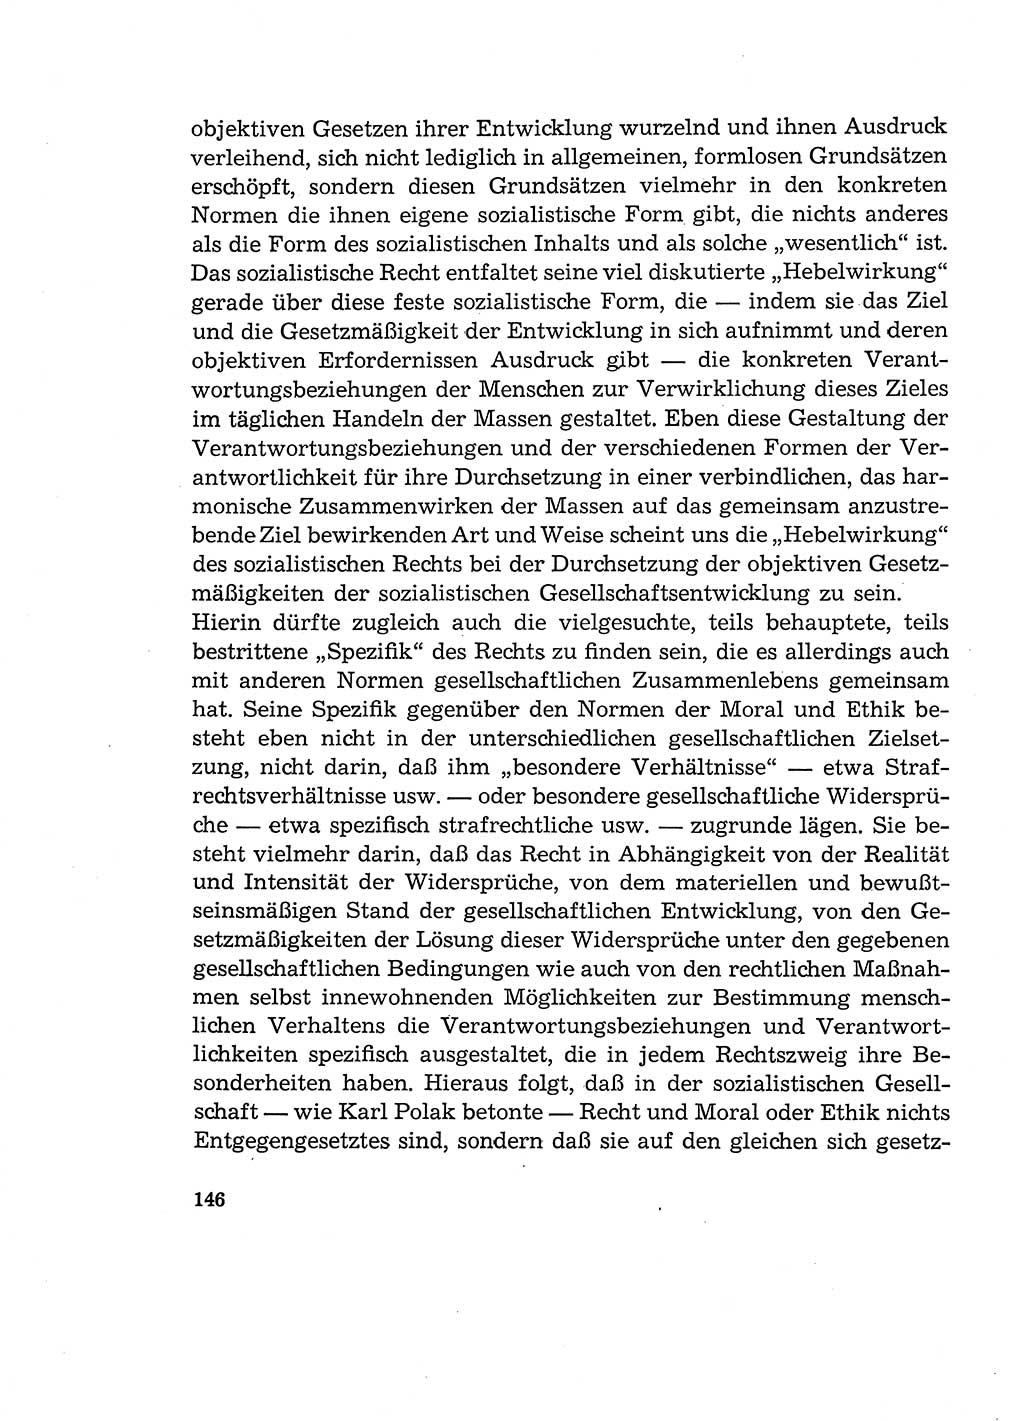 Verantwortung und Schuld im neuen Strafgesetzbuch (StGB) [Deutsche Demokratische Republik (DDR)] 1964, Seite 146 (Verantw. Sch. StGB DDR 1964, S. 146)